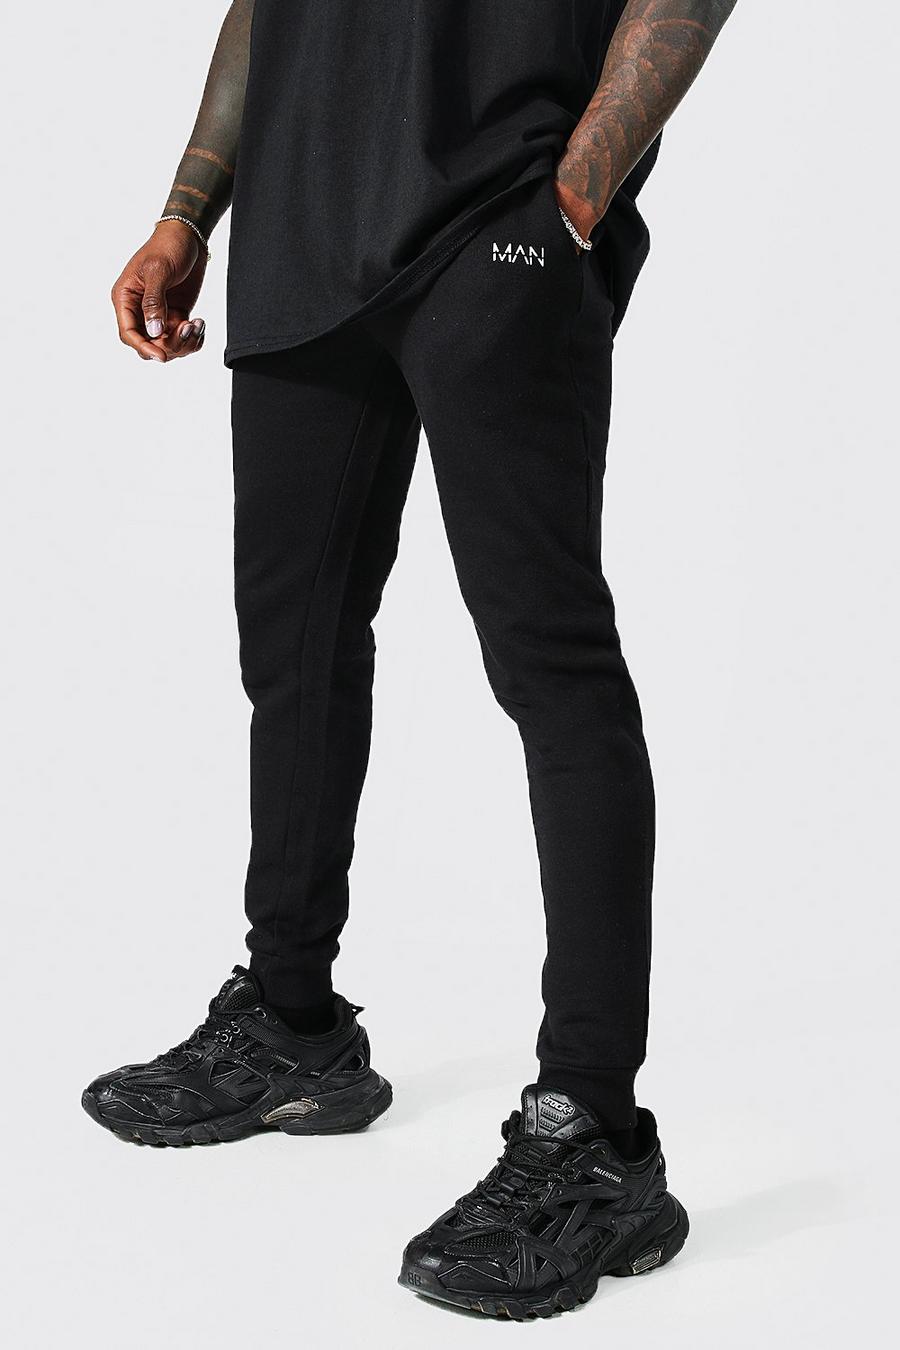 Pantalón deportivo súper pitillo con letras MAN, Black nero image number 1